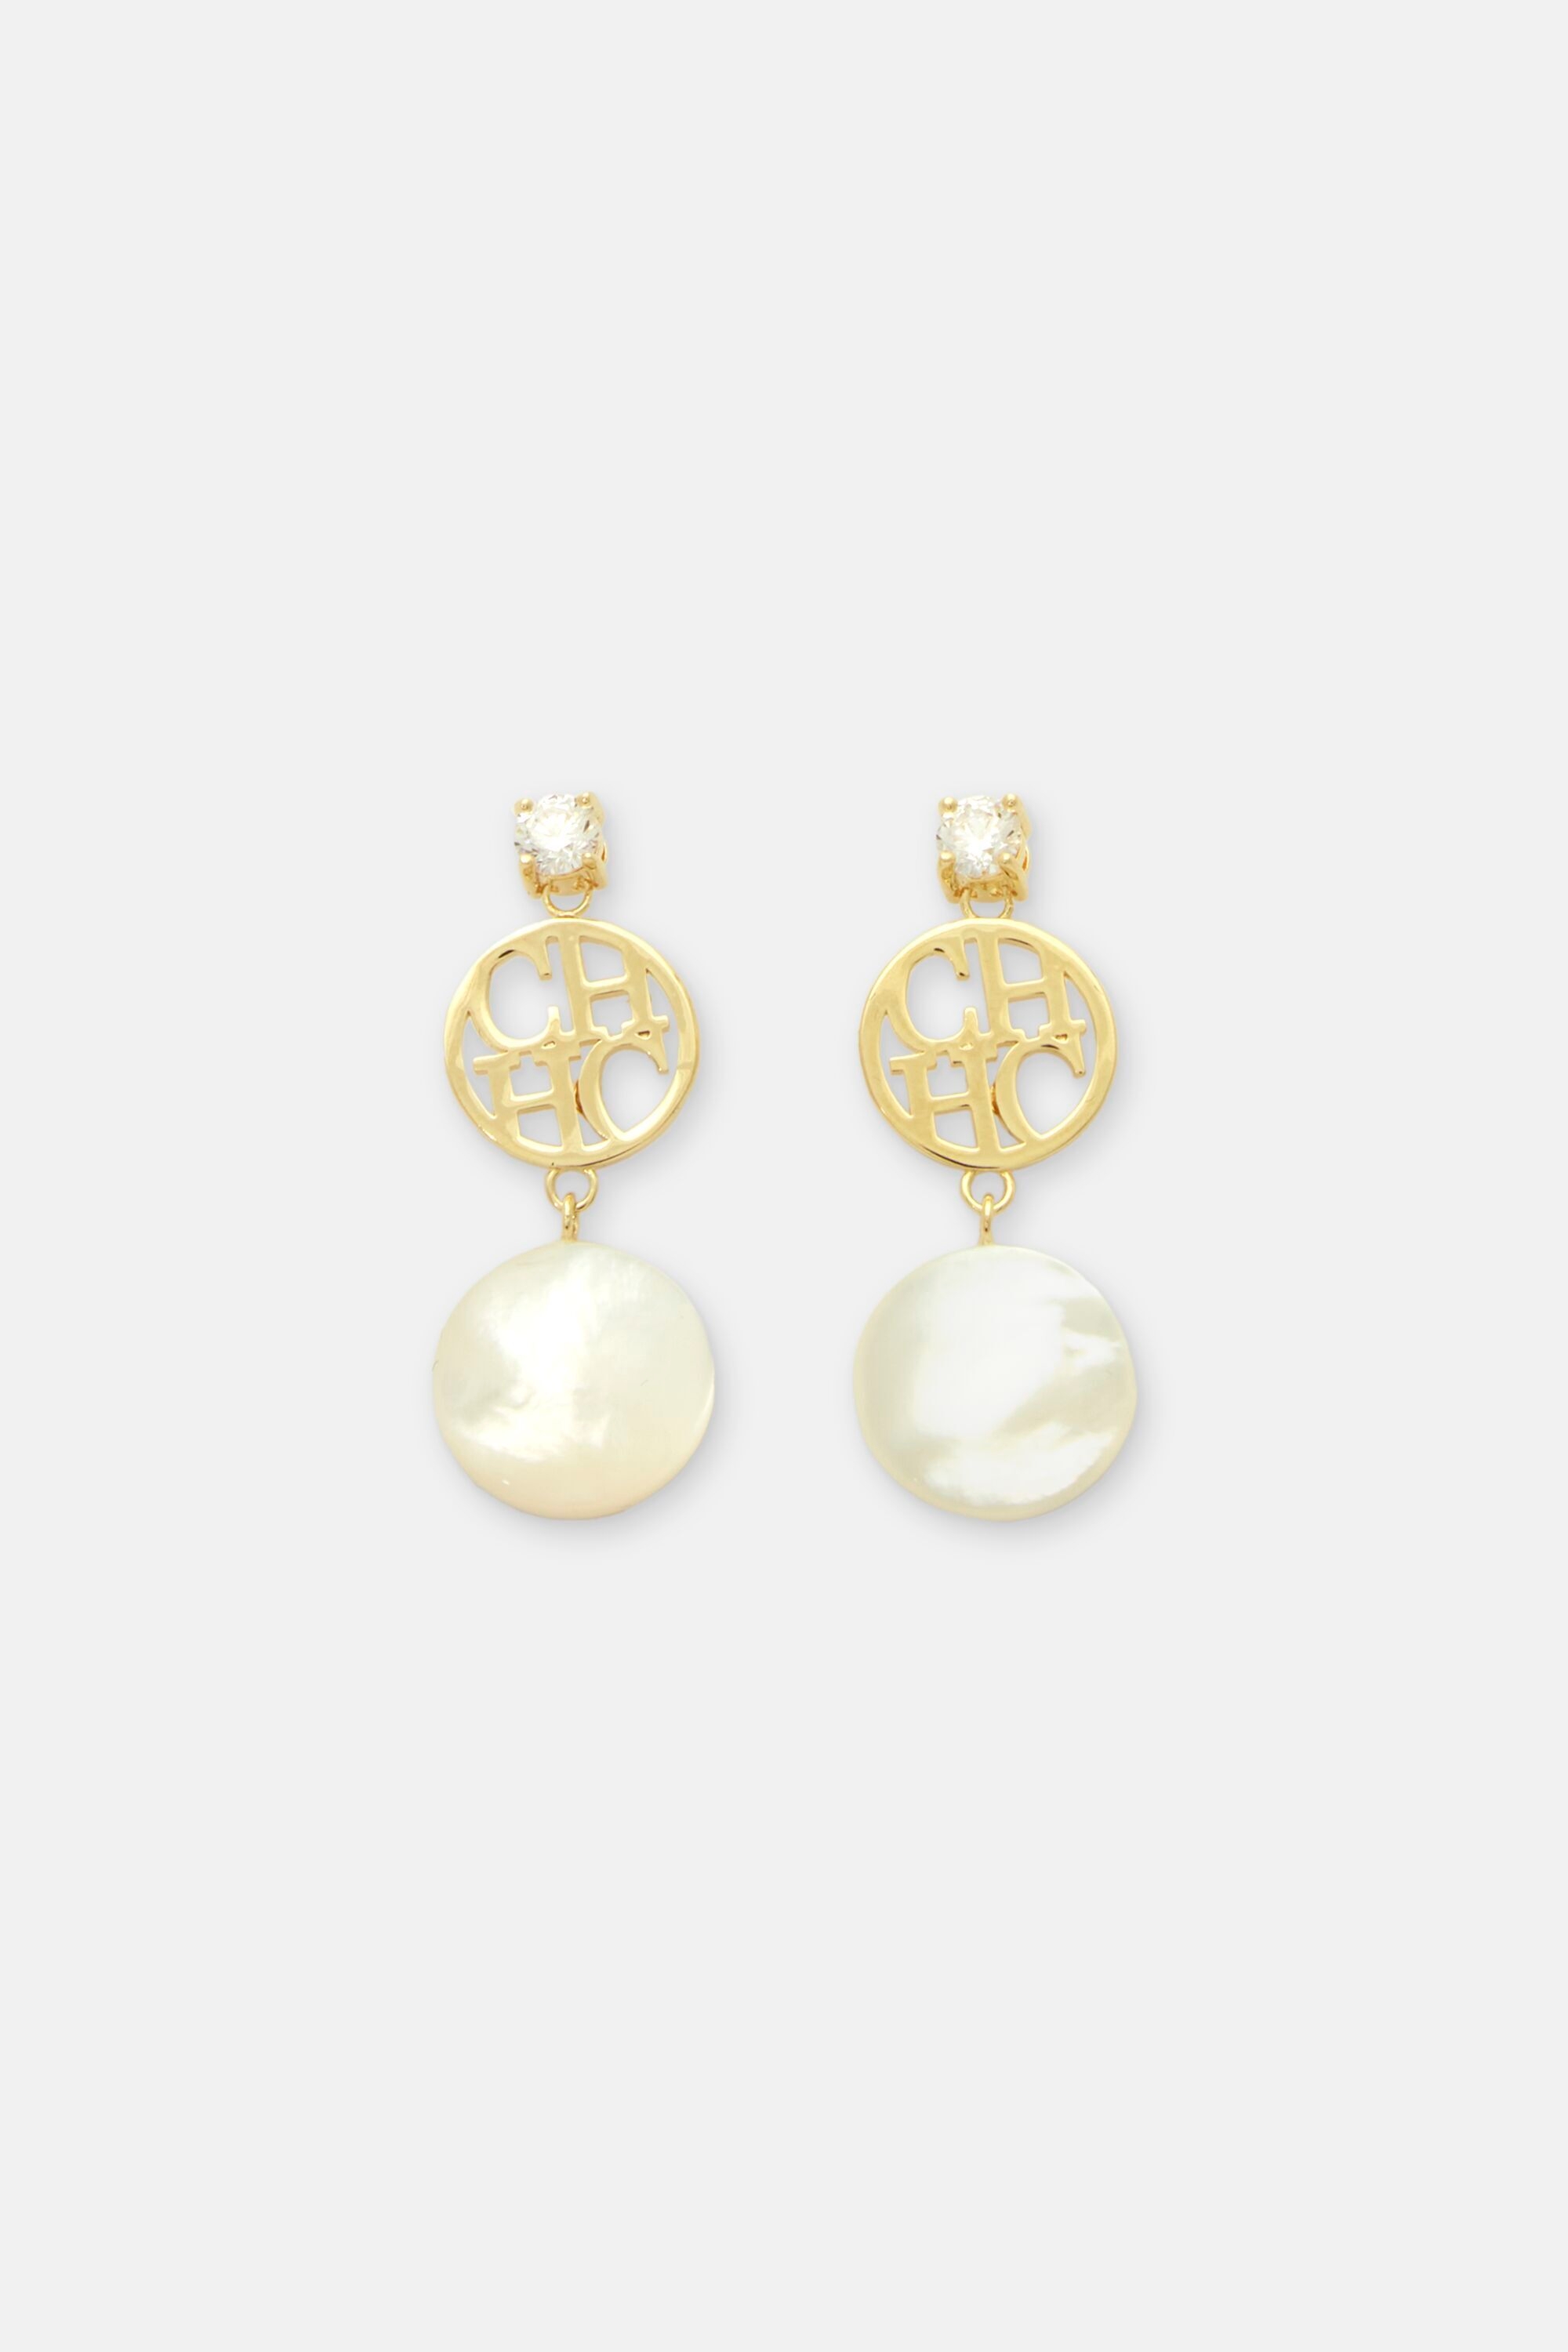 CH Moon earrings